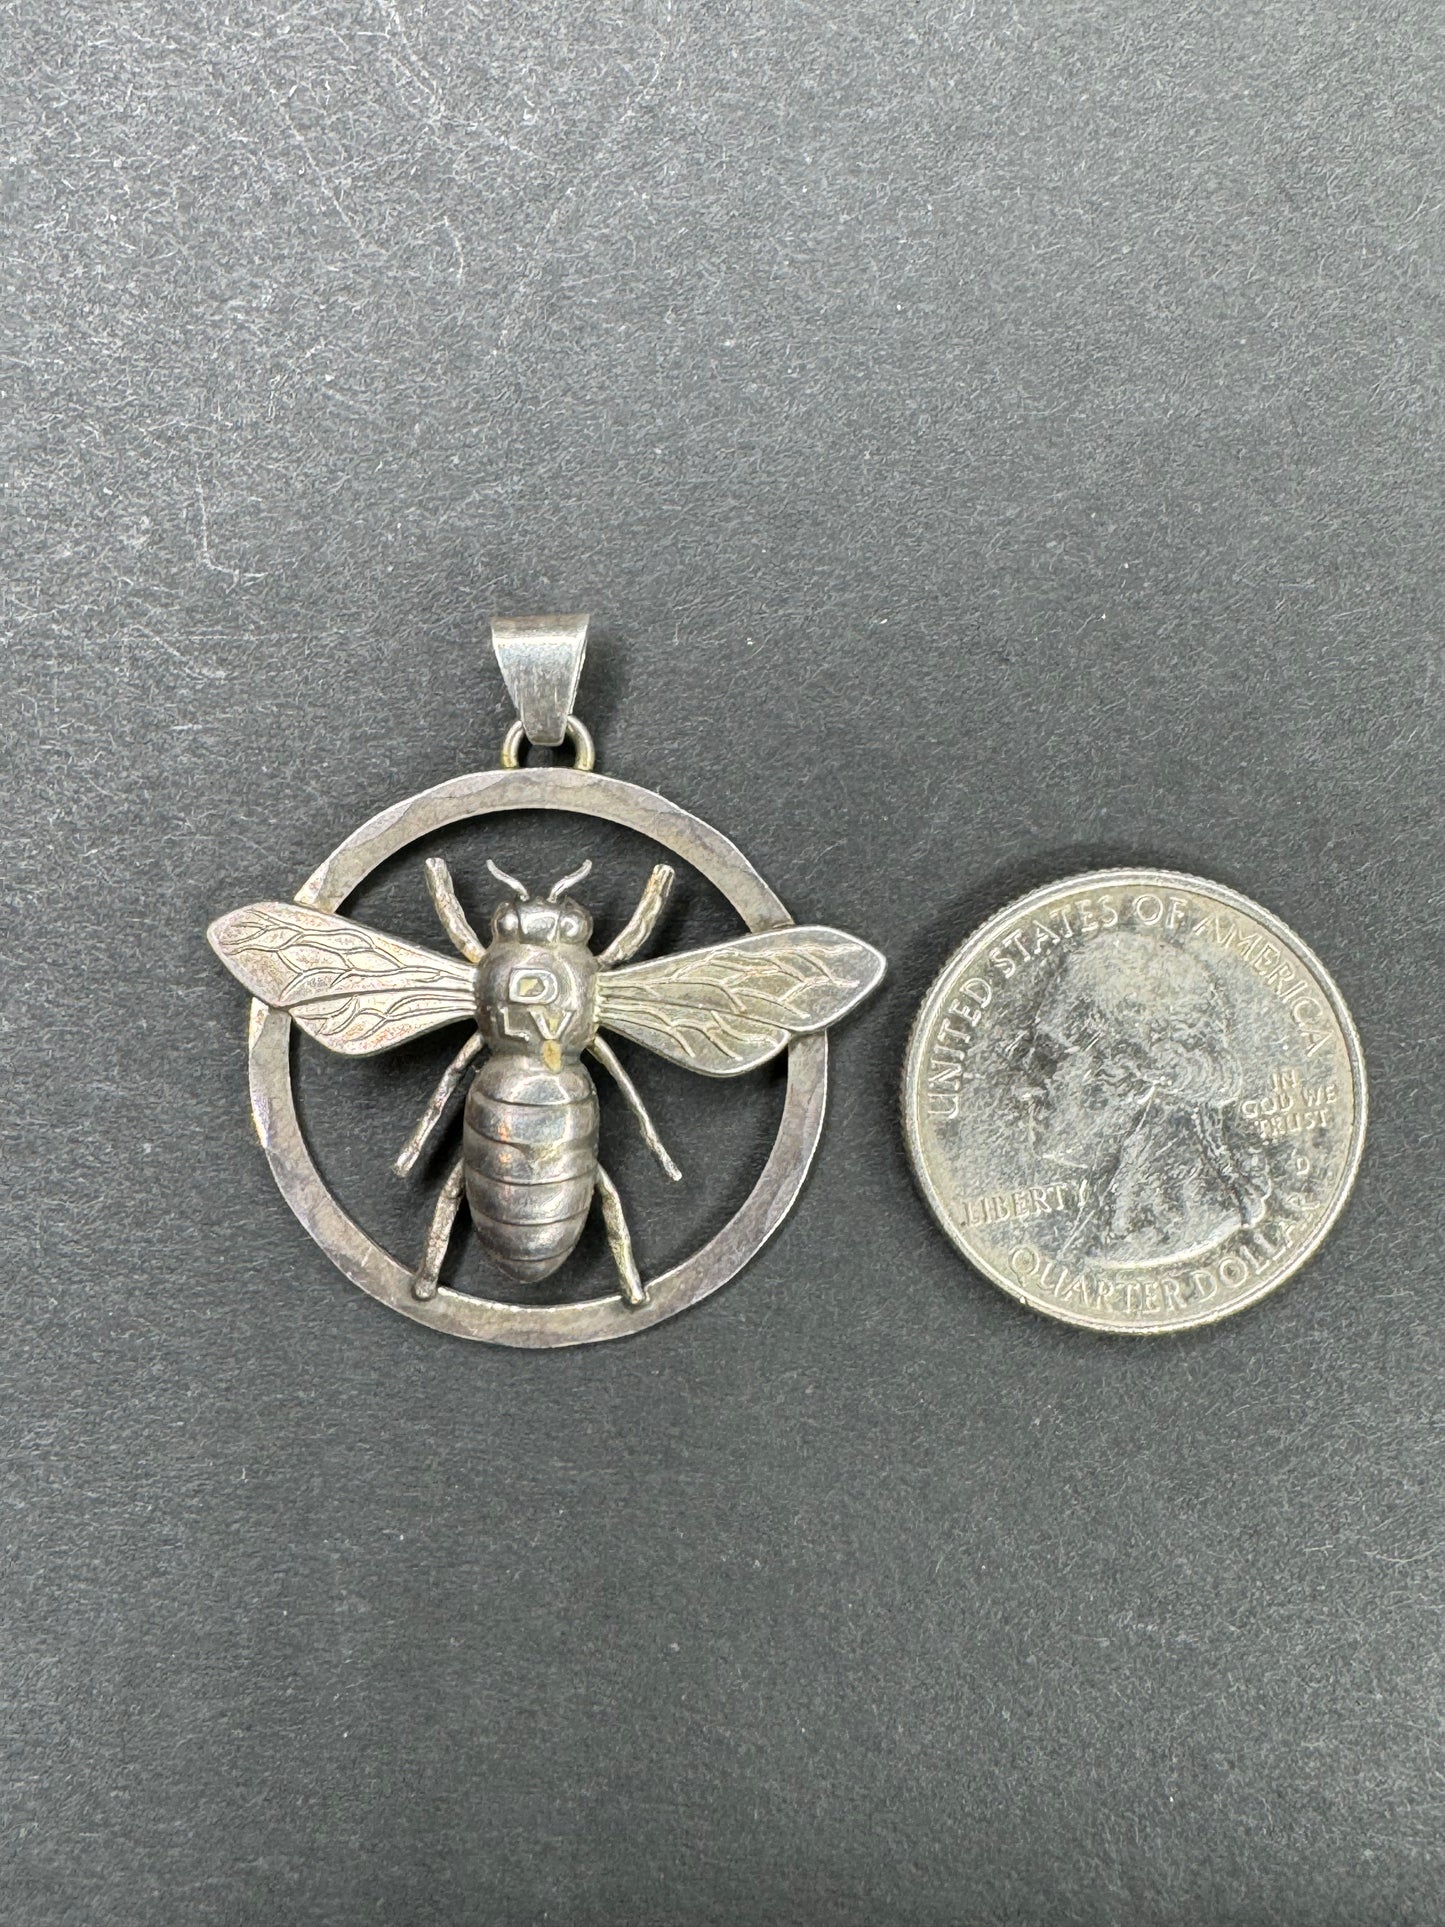 Greifen Kurnst German Bumble Bee Pendant 835 Silver